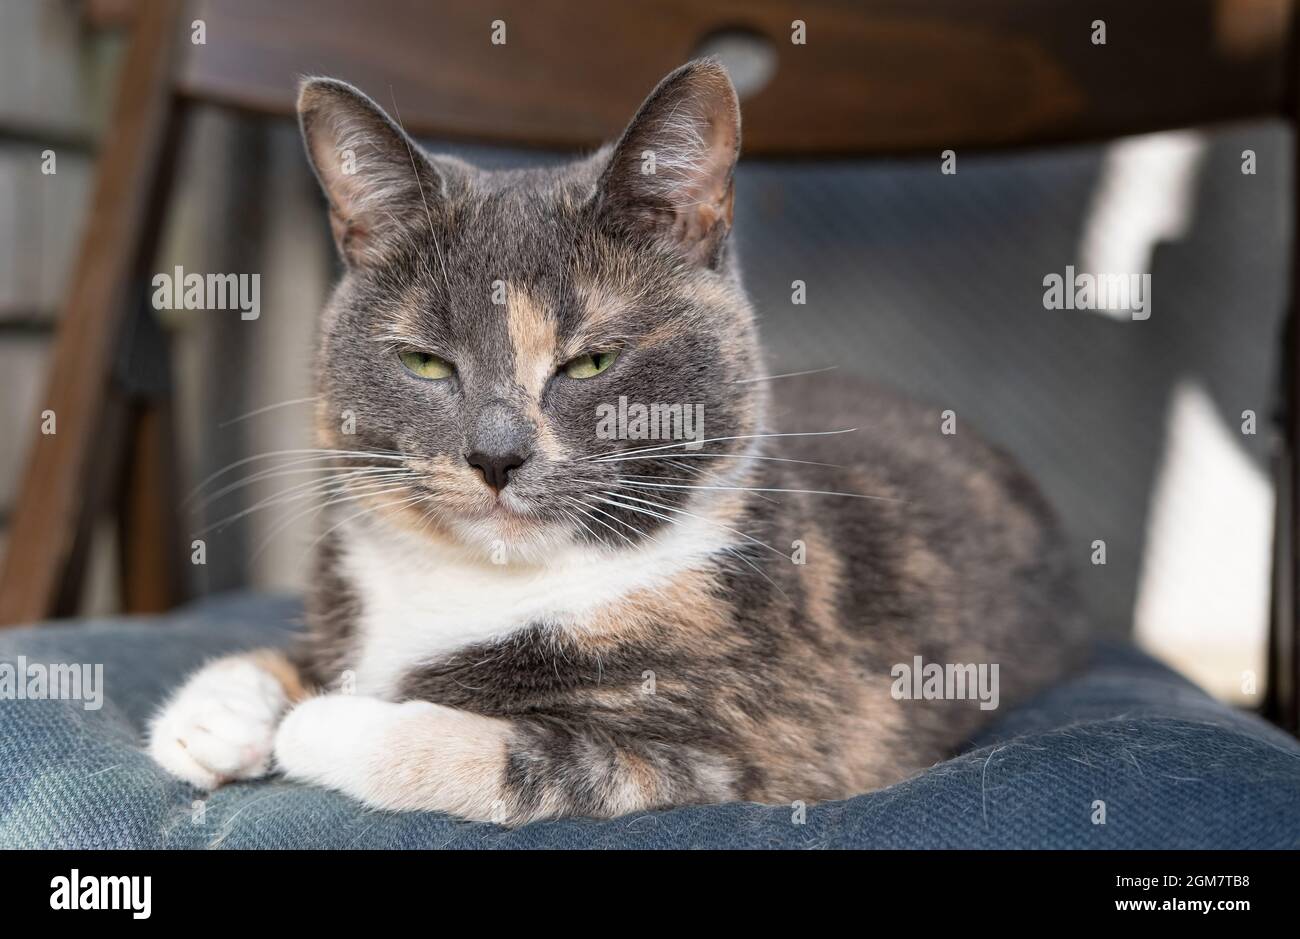 Unzufriedene Katze liegt auf einem weichen Stuhl und sieht verdächtig  verengte Augen aus Stockfotografie - Alamy